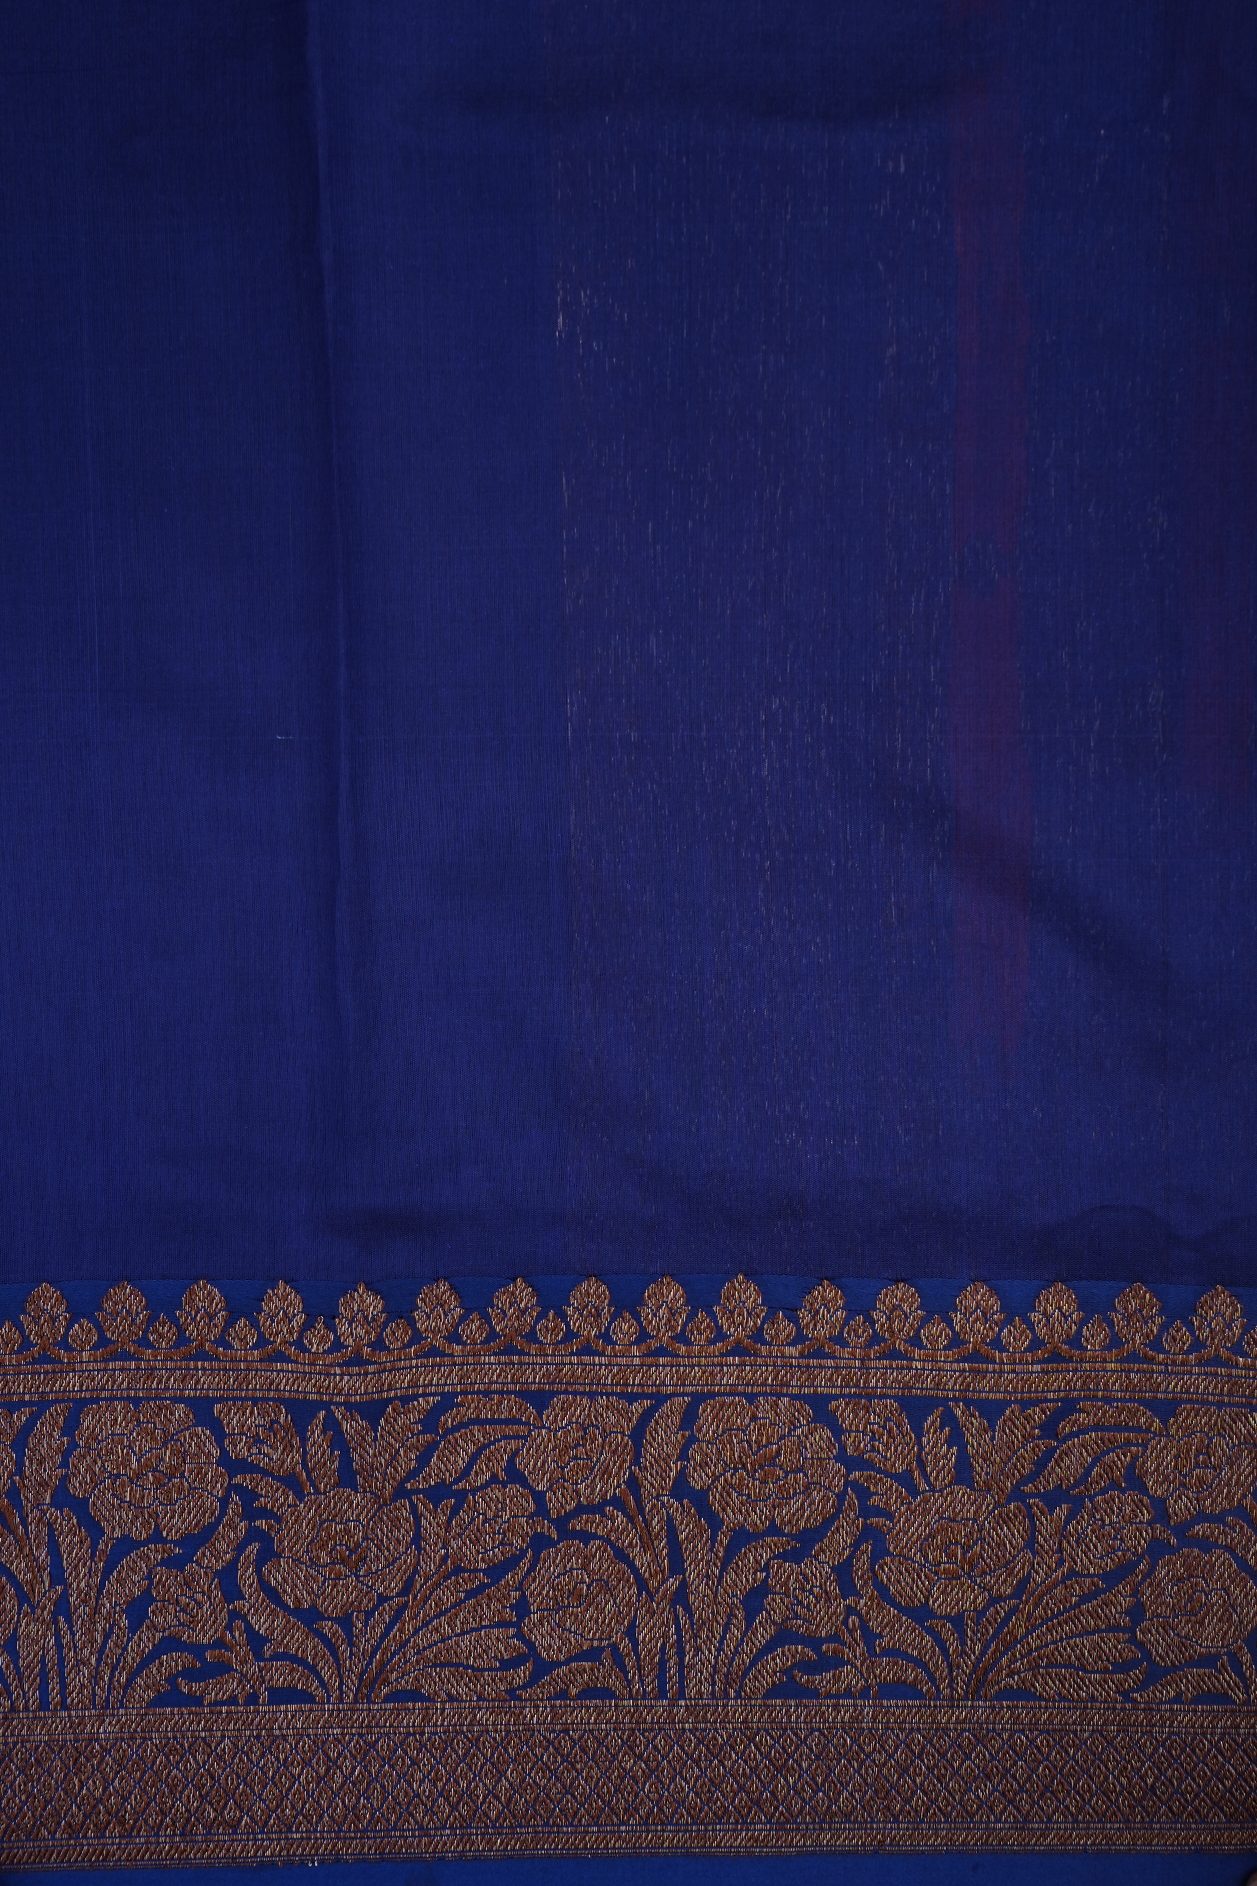 Meenakari Work Buttas Dusty Purple Tussar Banarasi Silk Saree